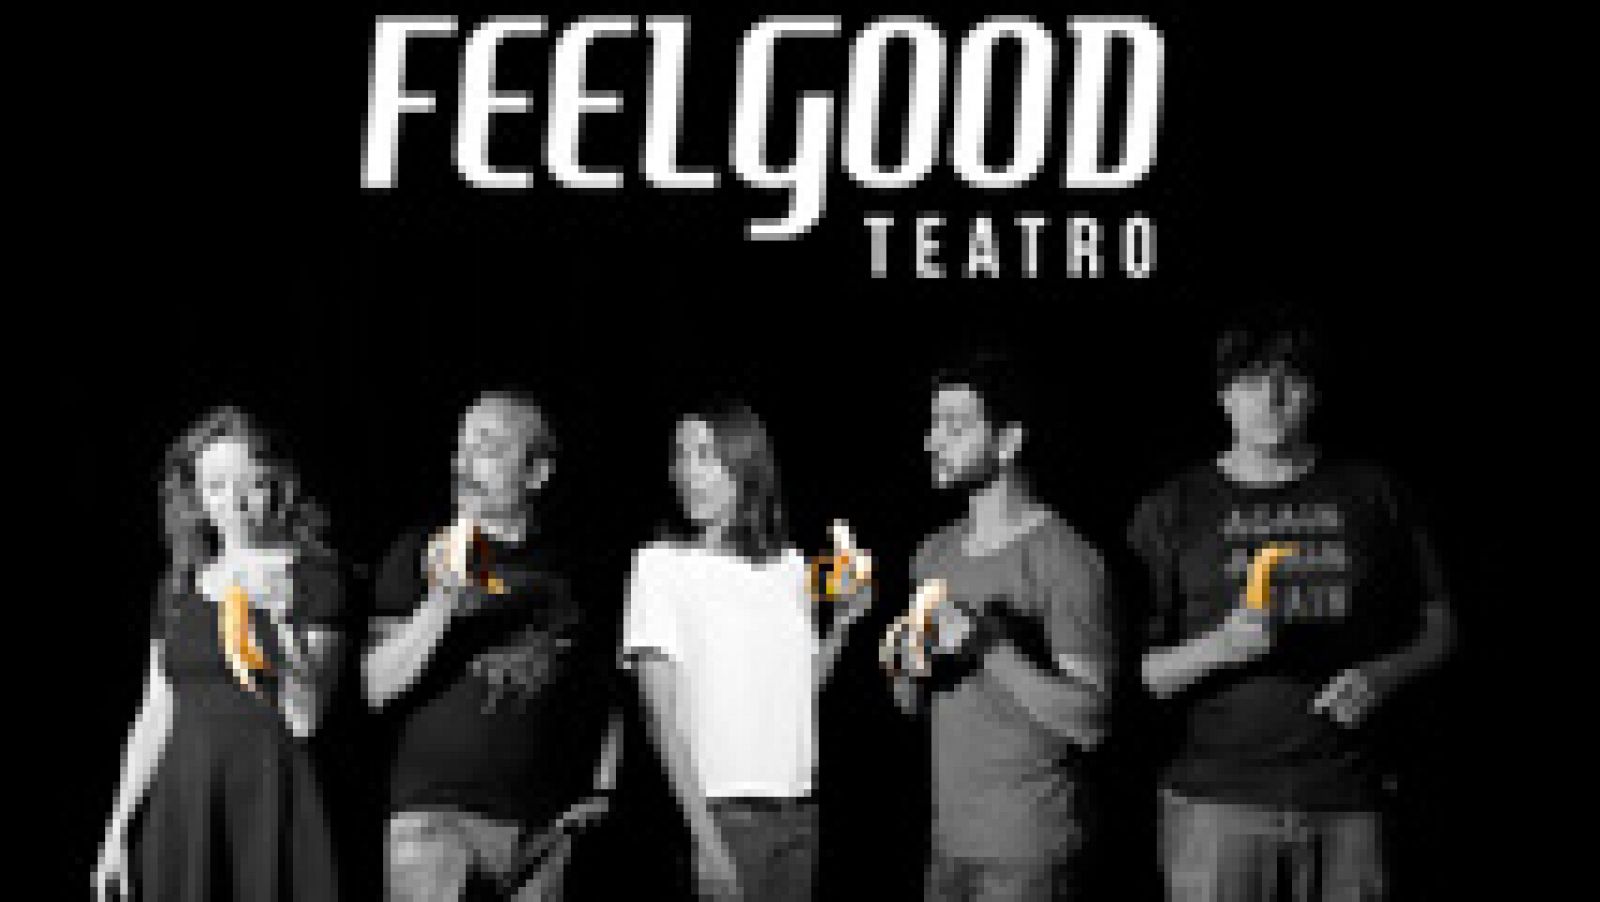 El teatro es riqueza, la campaña por la Cultura de Feelgood Teatro